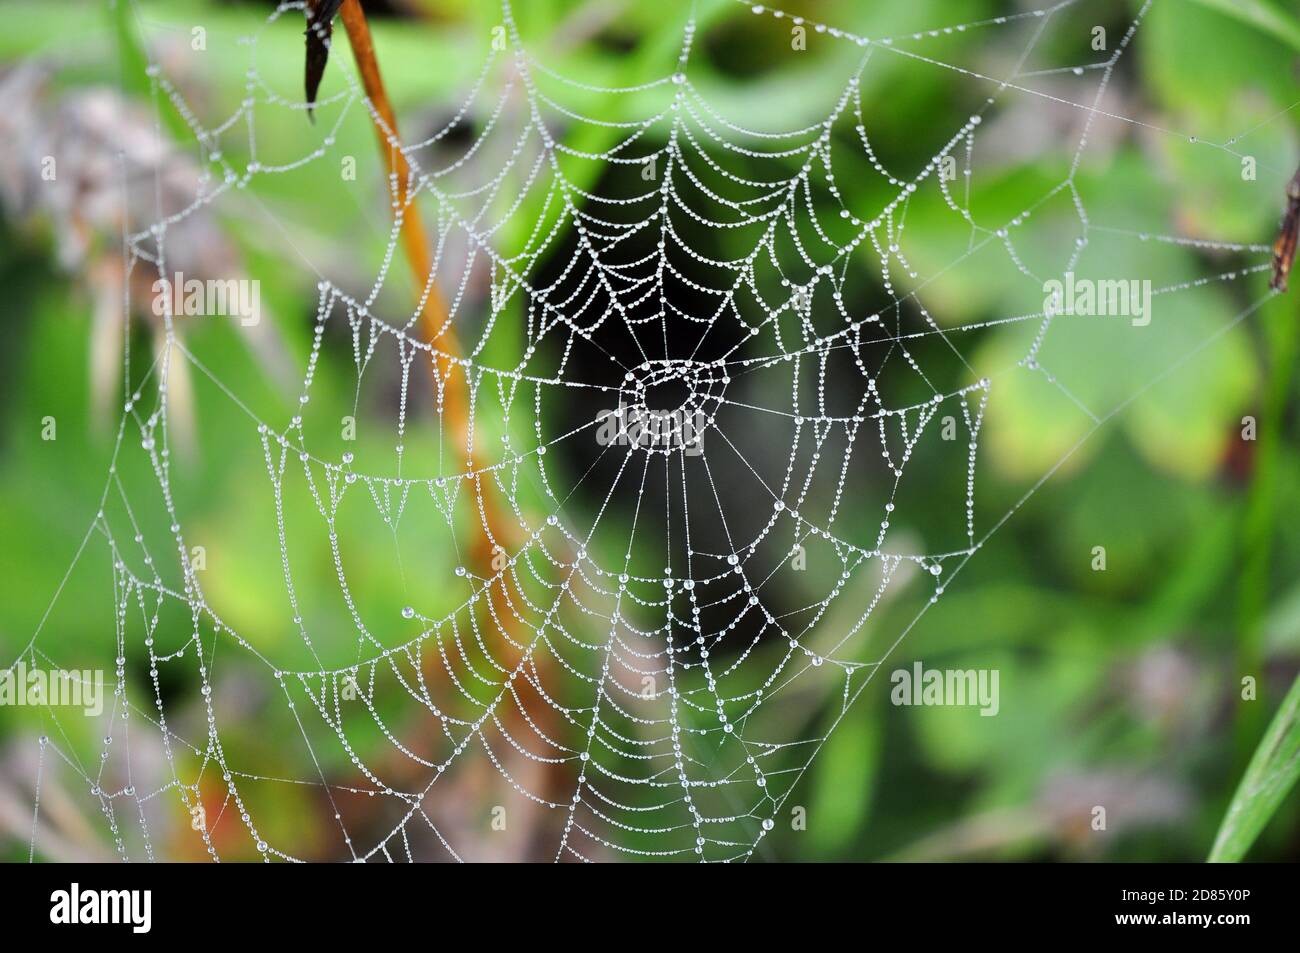 Tautropfen in einem Spinnennetz, das in der Vegetation hängt Stockfoto